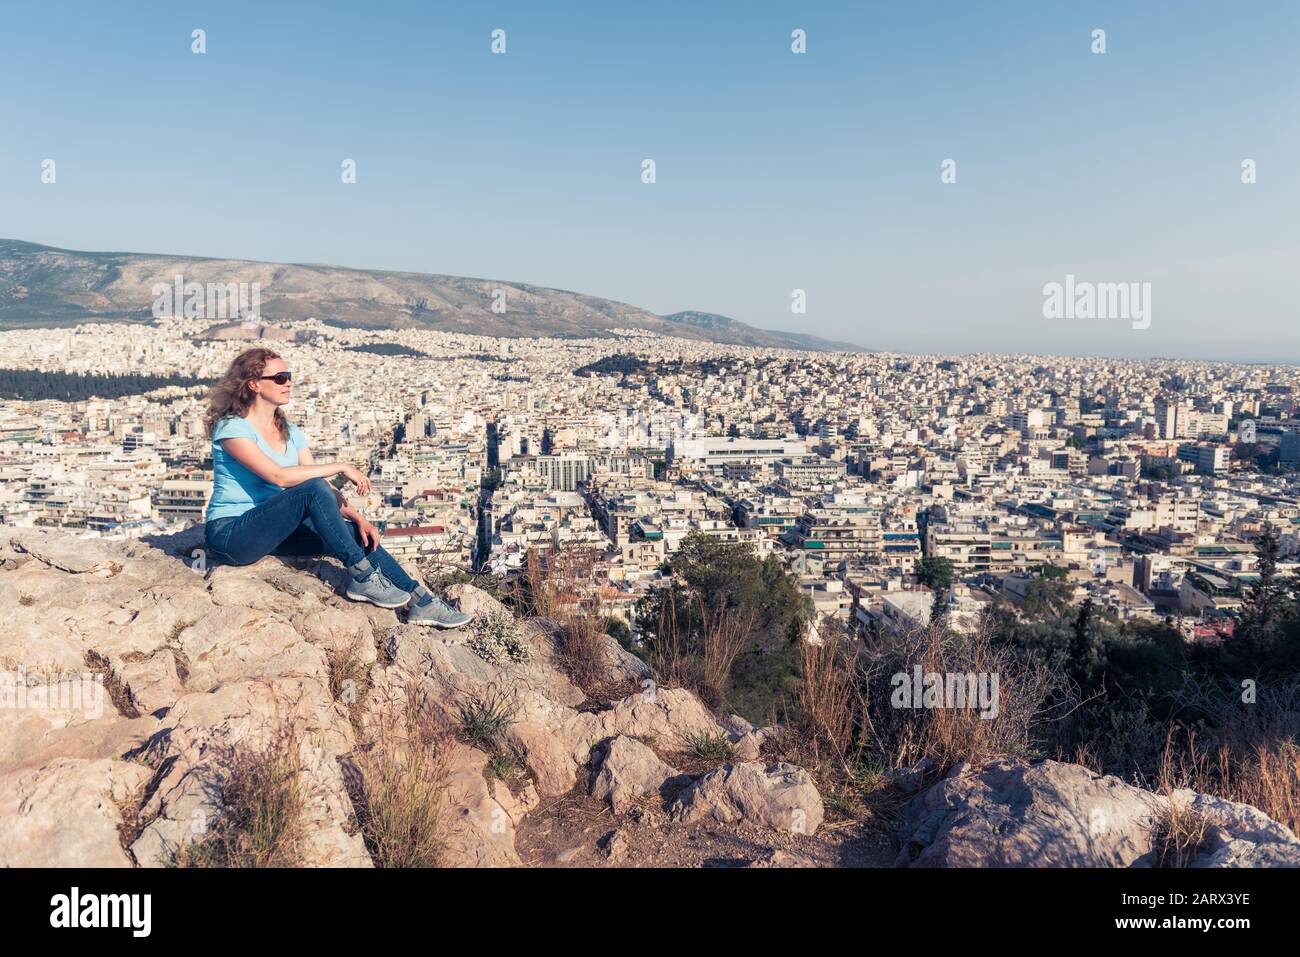 Junge hübsche Frau blickt auf die Stadt Athen, Griechenland. Schöner Erwachsenen-Tourist entspannt mit Blick auf Athen im Sommer. Attraktive Person steht im Hintergrund Stockfoto